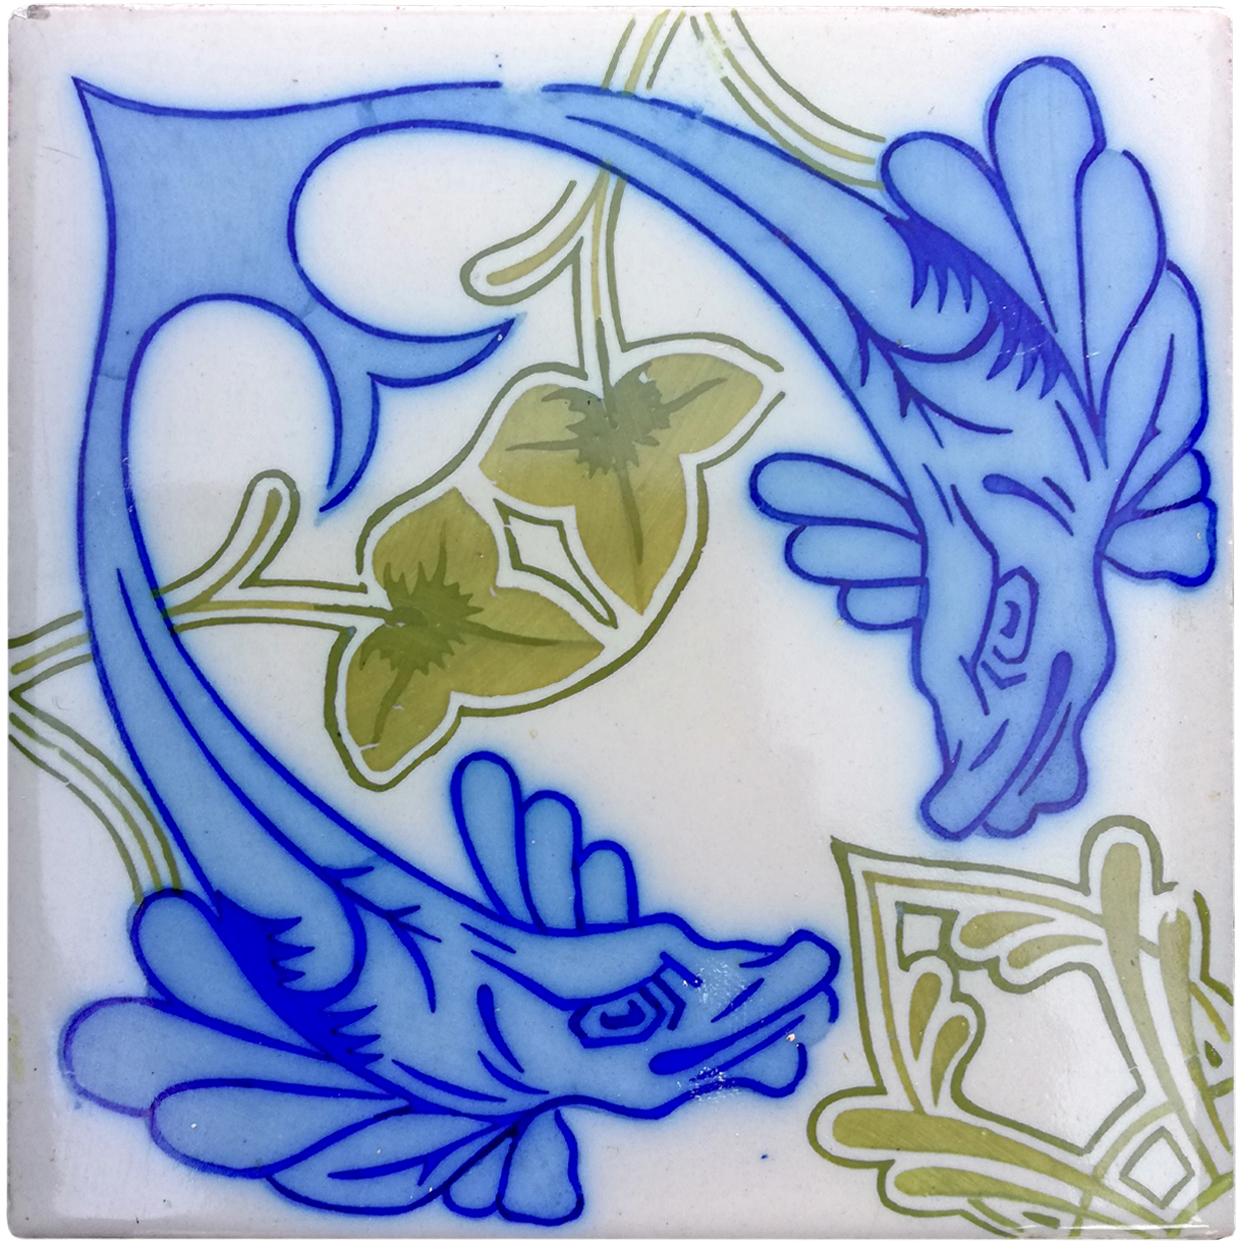 34 Stück. Außergewöhnliche antike Wandfliesen, weiß mit kobaltblauer und moosgrüner Abbildung eines Fisches (Onda, Spanien Valencia). 
Die Abmessungen pro Fliese sind 5,9 Zoll (15 cm) × 5,9 Zoll (15 cm). Ebenfalls erhältlich sind 10 Randfliesen 5,9